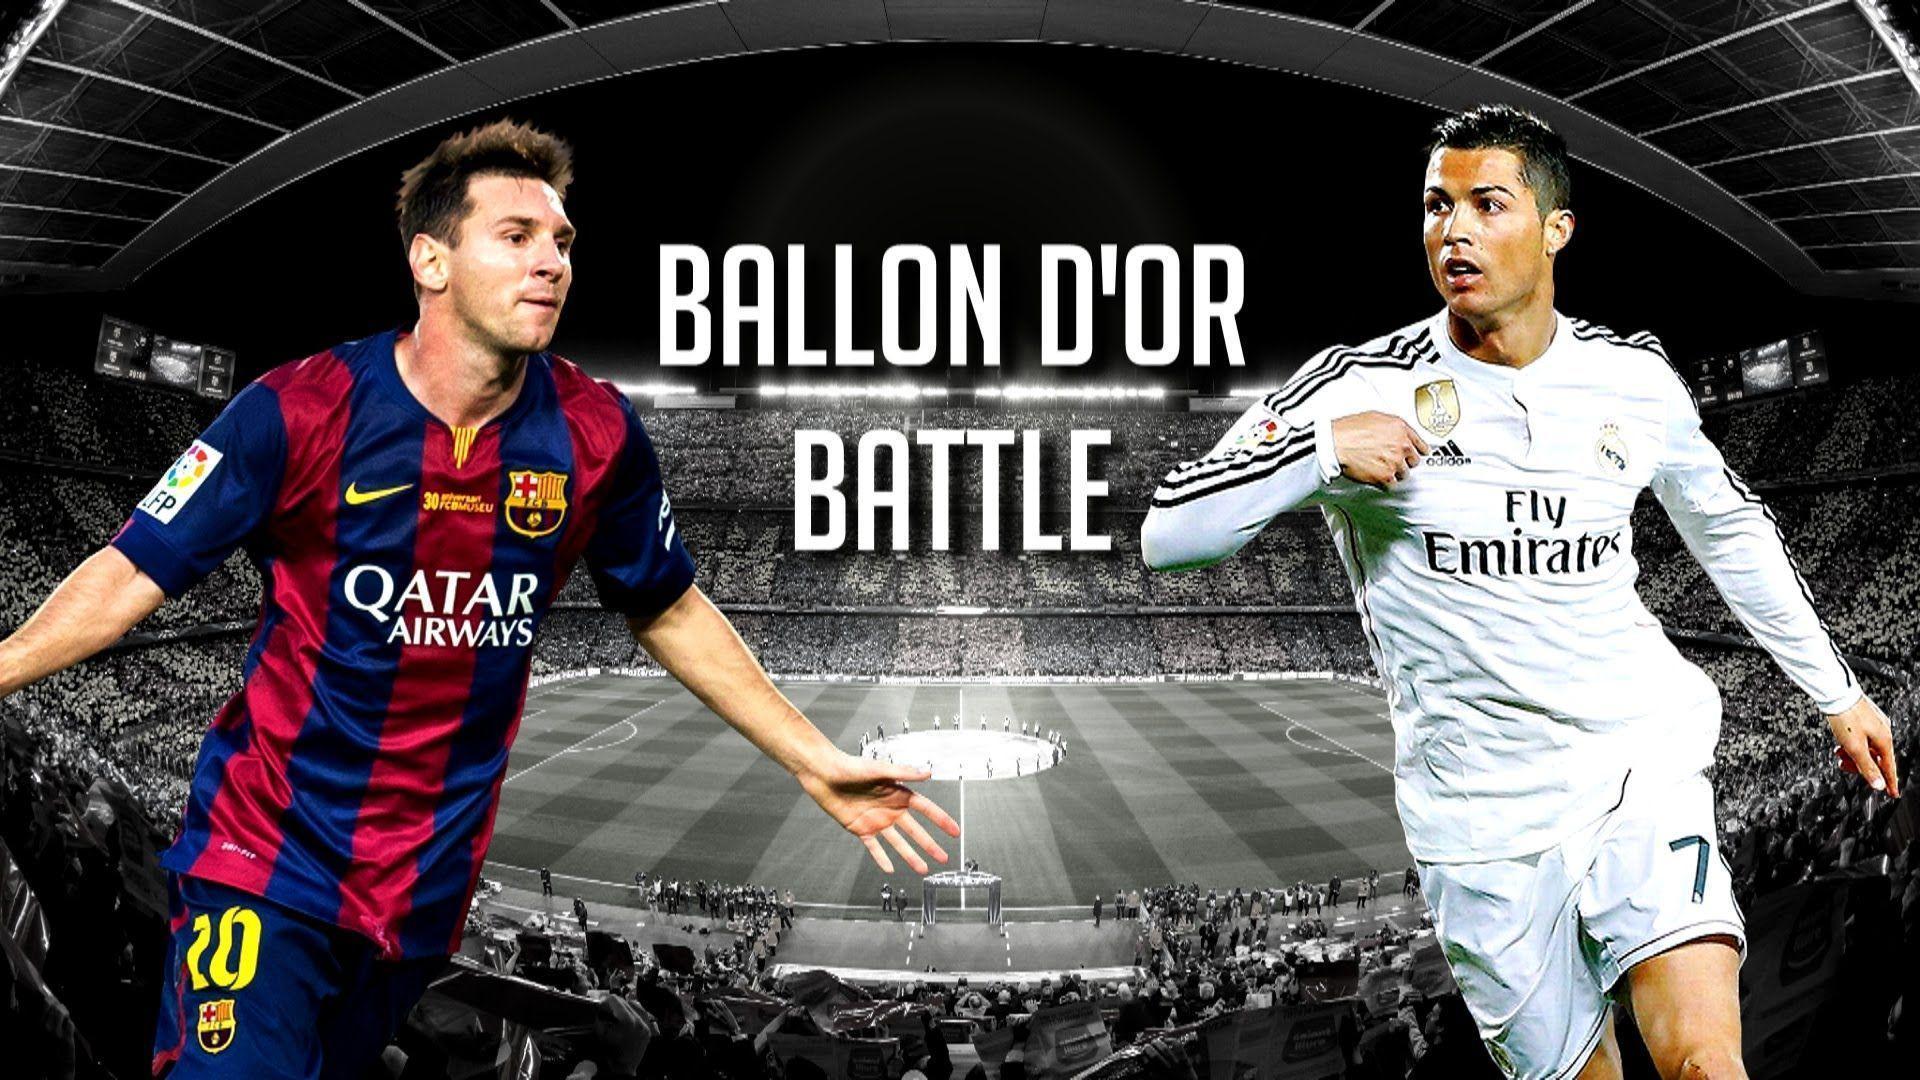 Cristiano Ronaldo vs Lionel Messi ● Ballon D&;Or Battle 2015